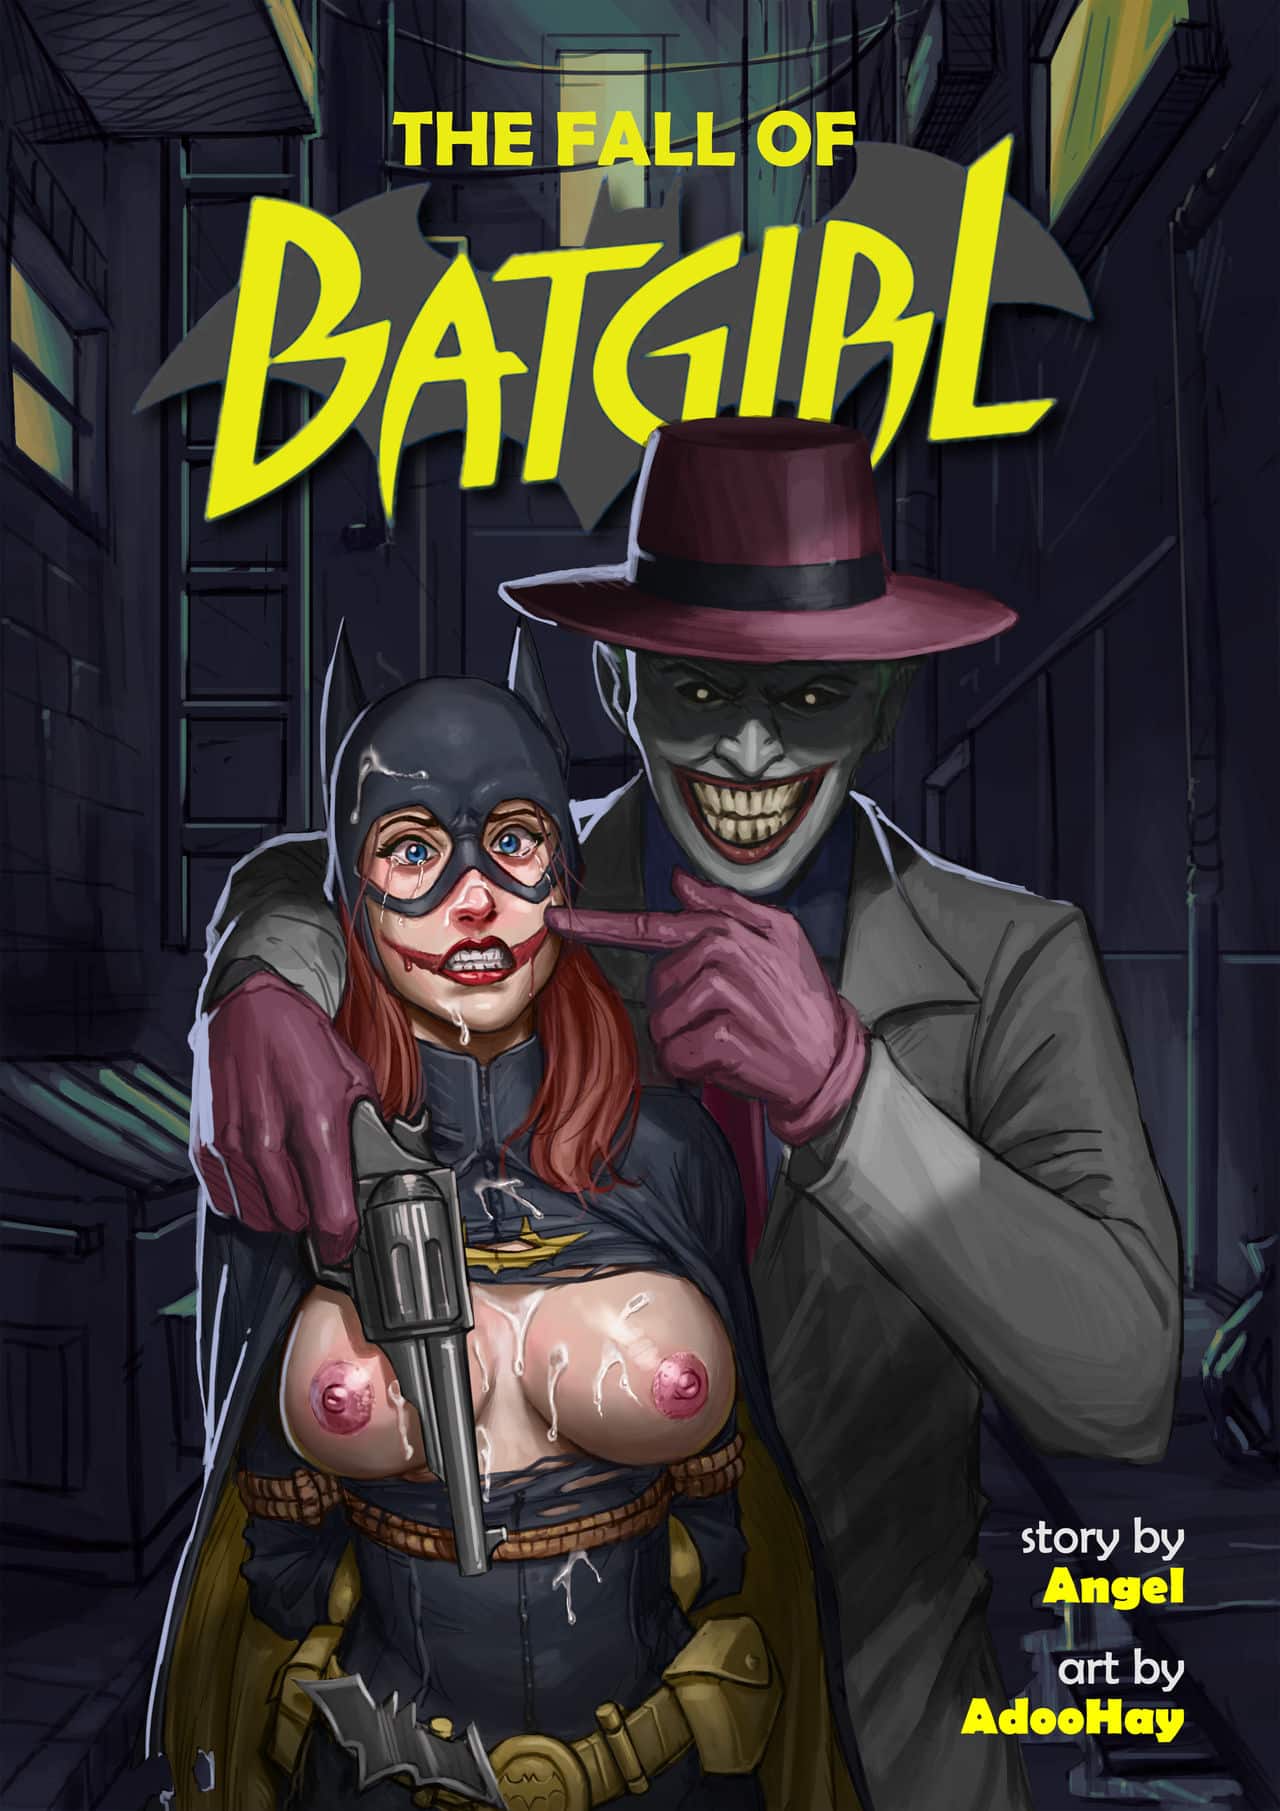 The fall of batgirl